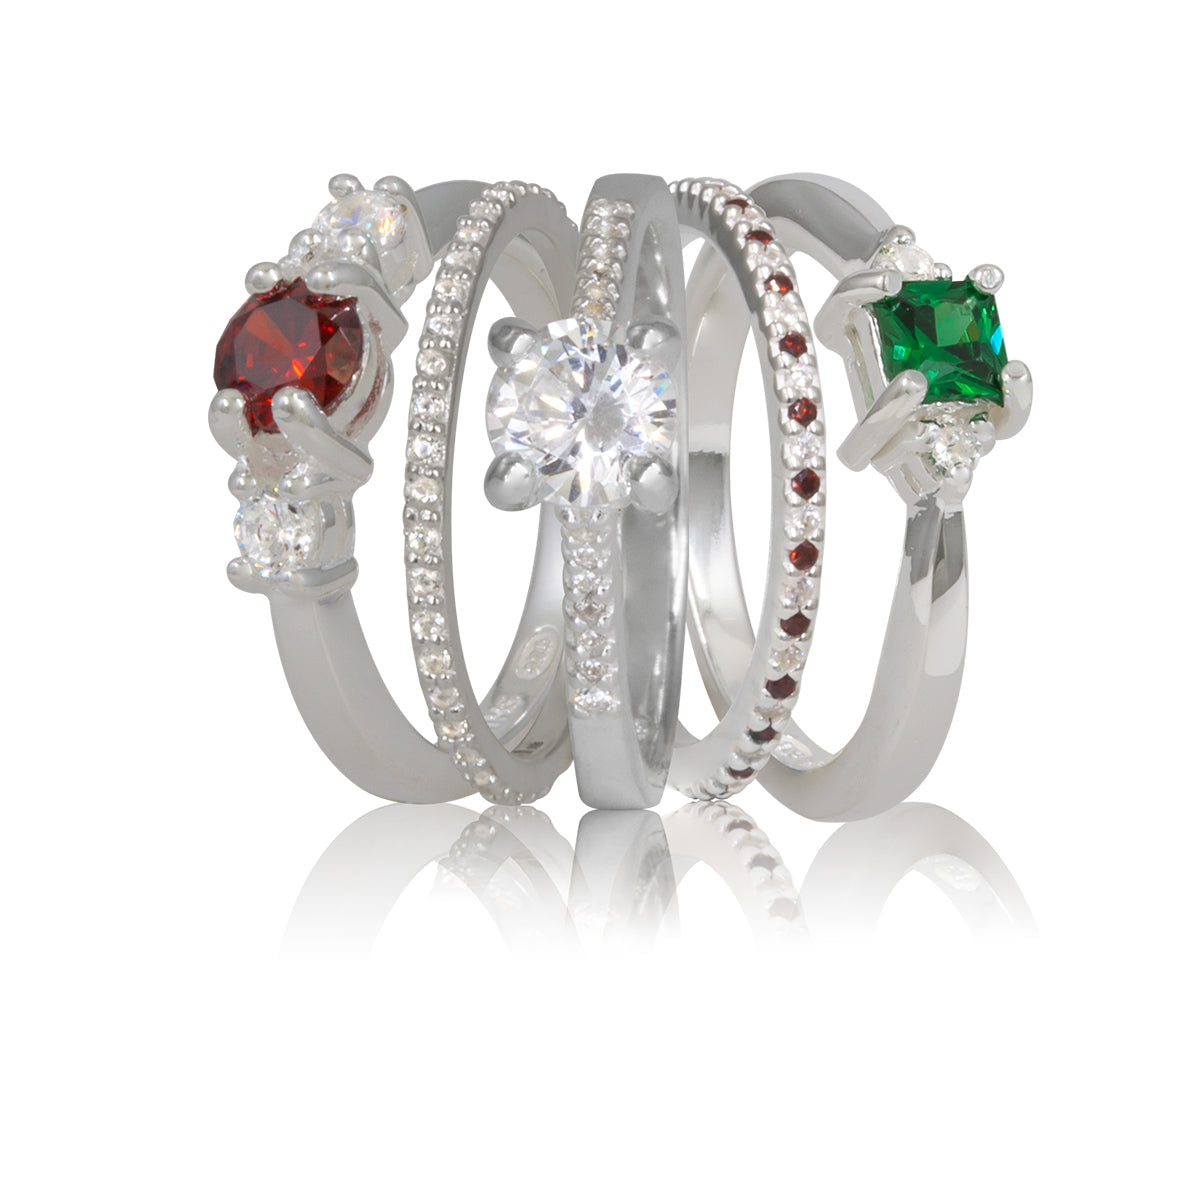 Gemstone rings for women